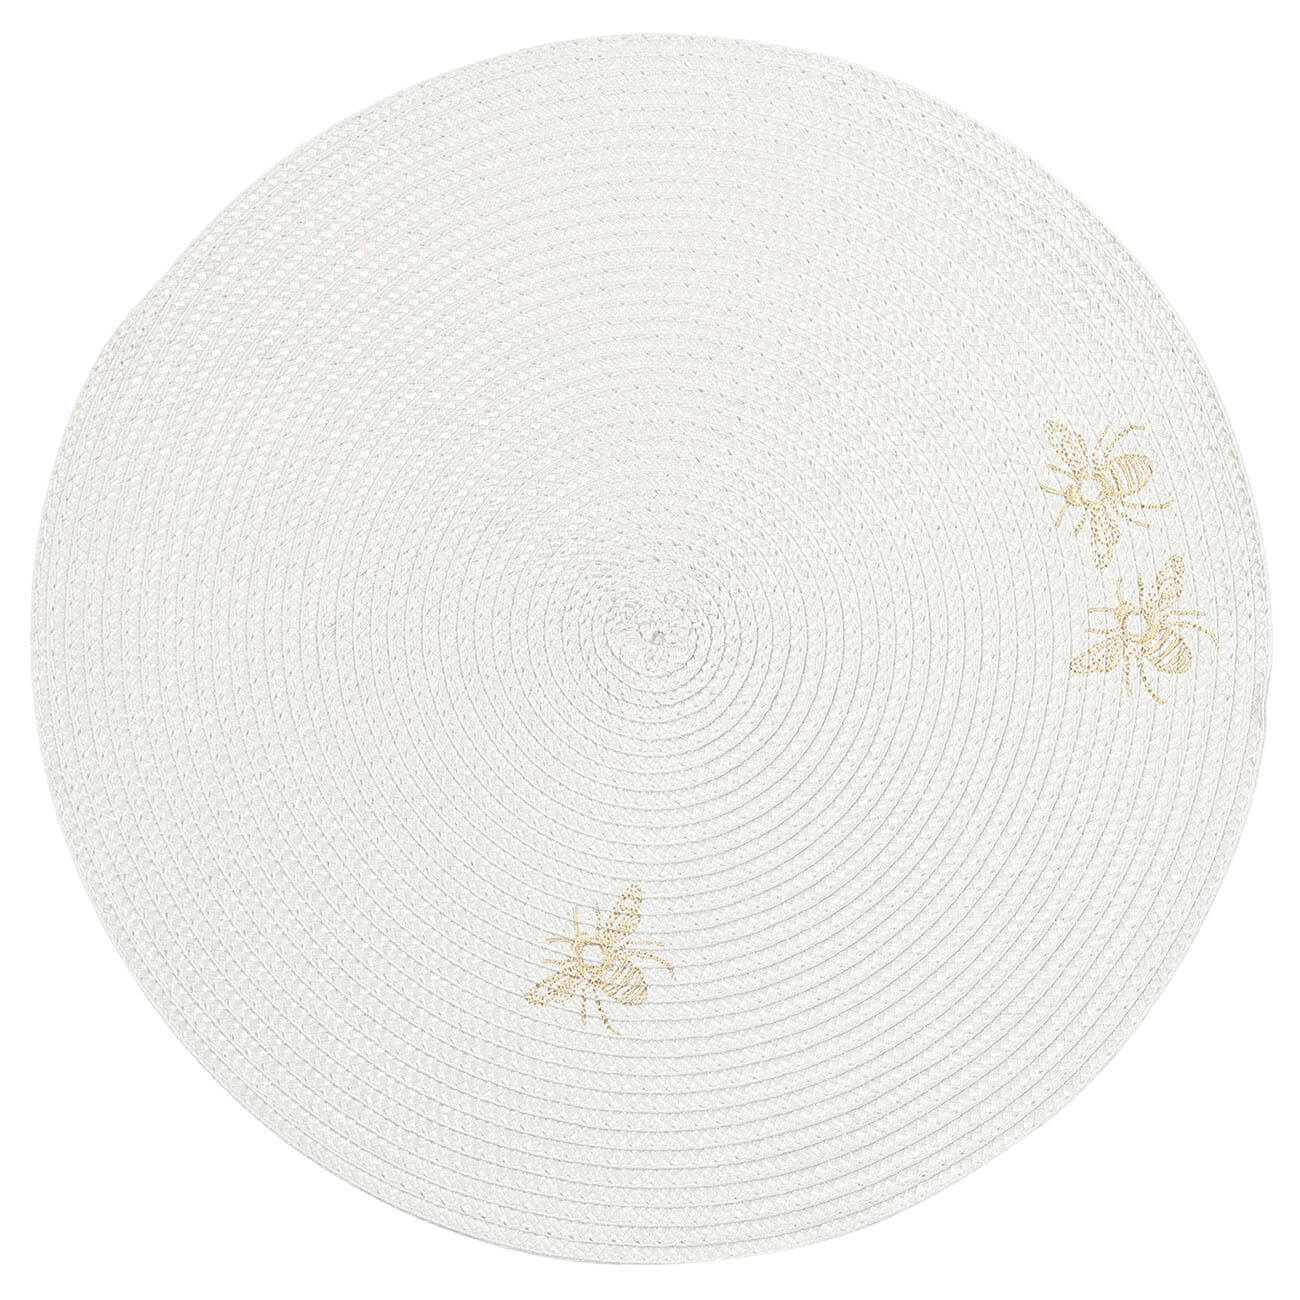 Салфетка под приборы, 38 см, полипропилен/ПЭТ, круглая, светло-серая, Пчелы, Circle embroidery салфетка a vm